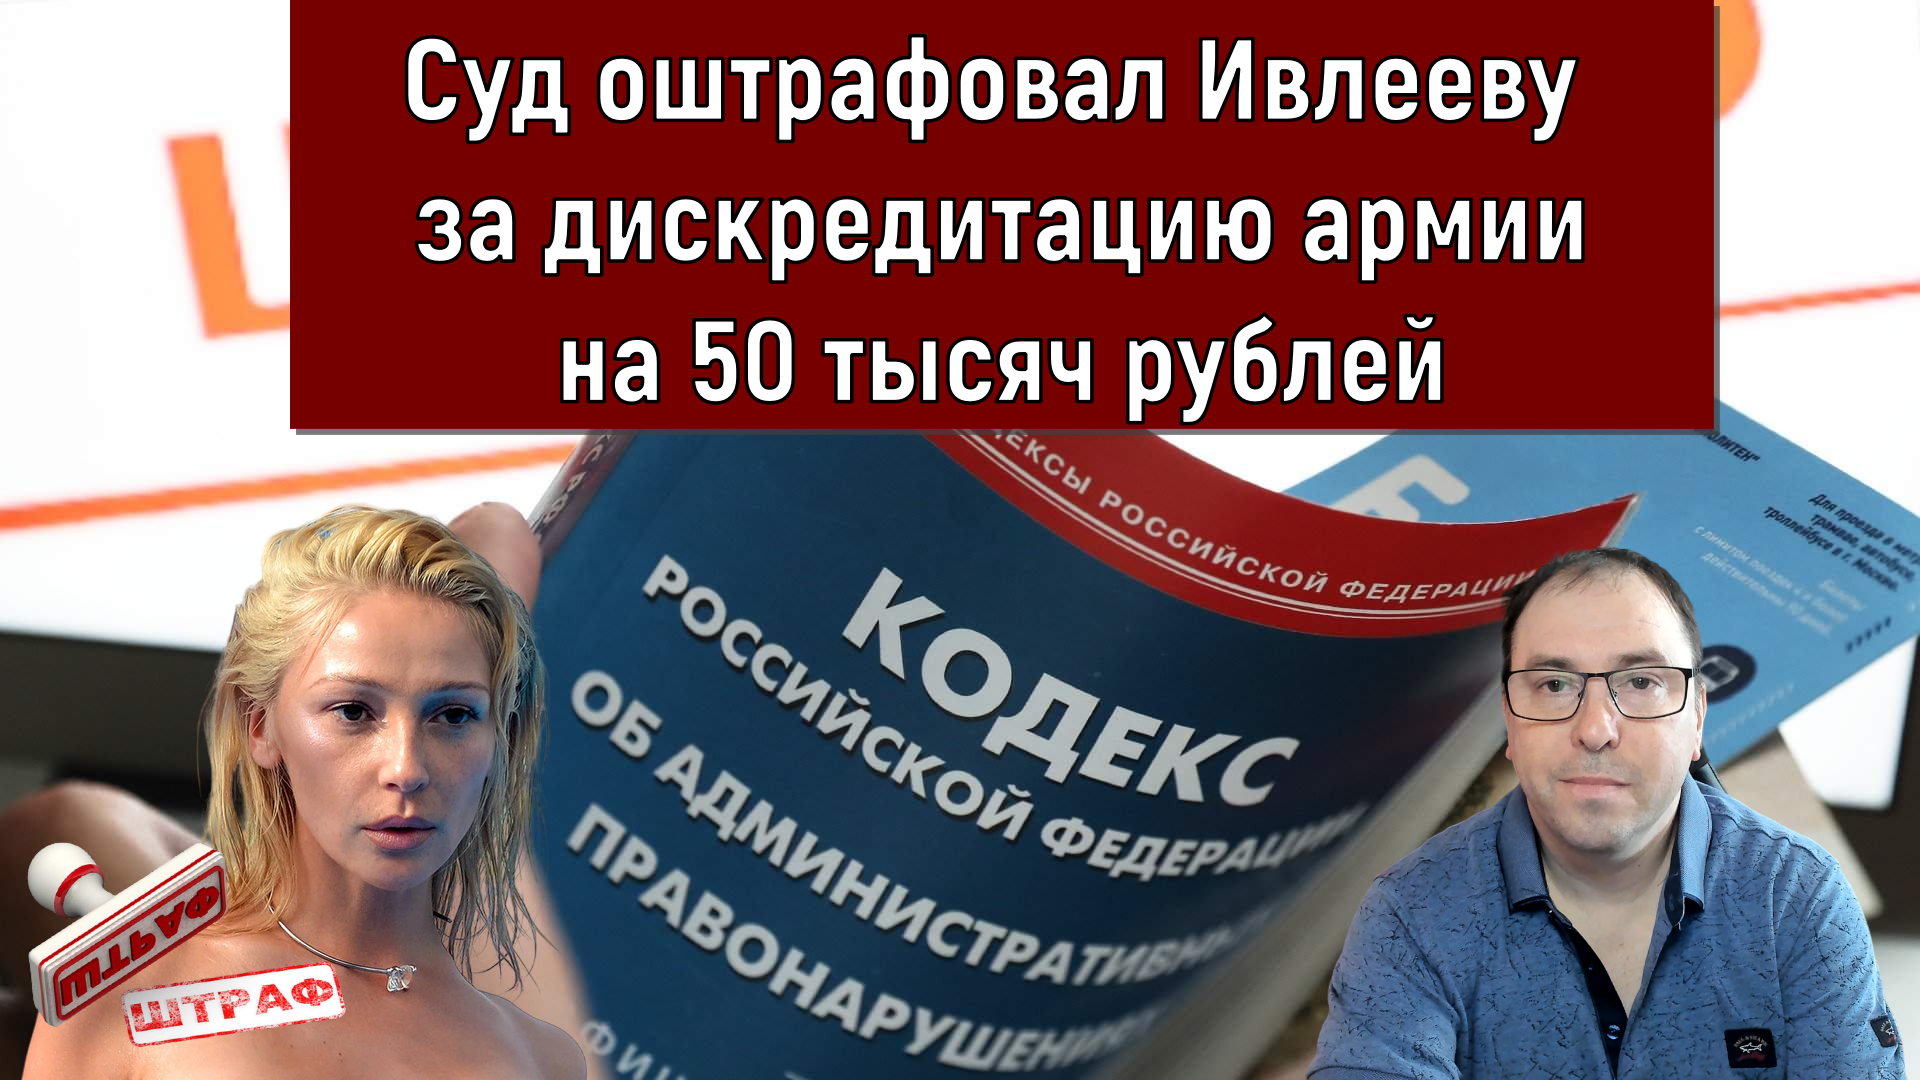 Суд оштрафовал Ивлееву за дискредитацию армии на 50 тысяч рублей